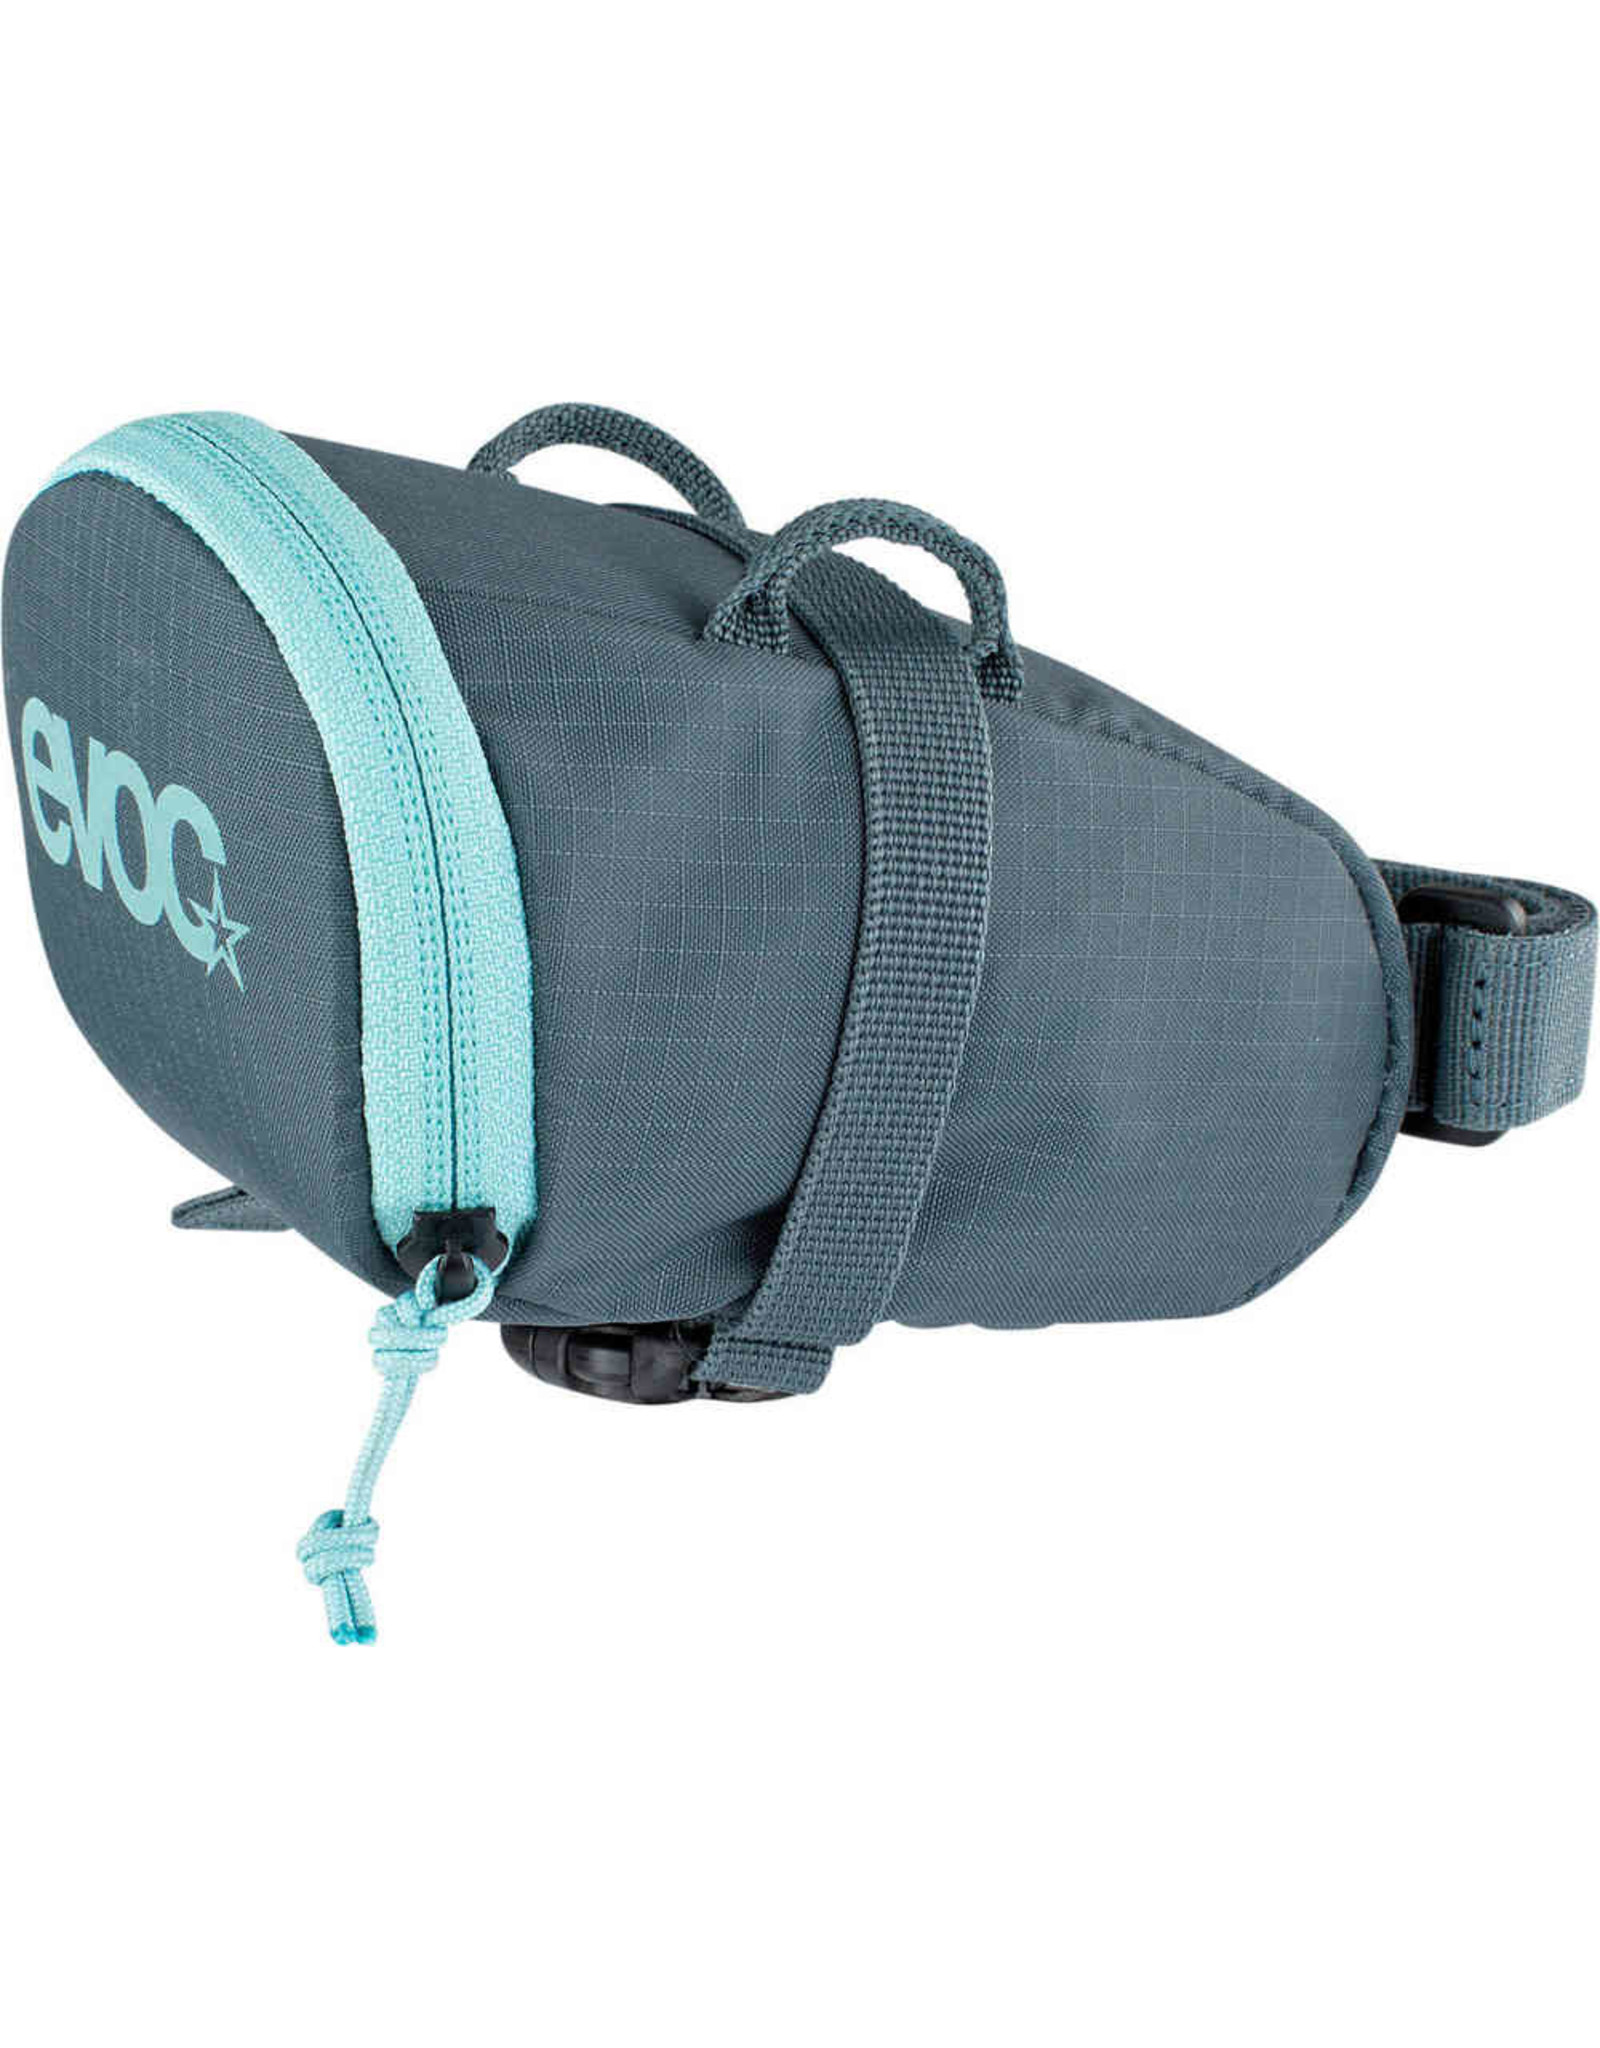 EVOC EVOC, Seat Bag M, Seat Bag, 0.7L, Slate